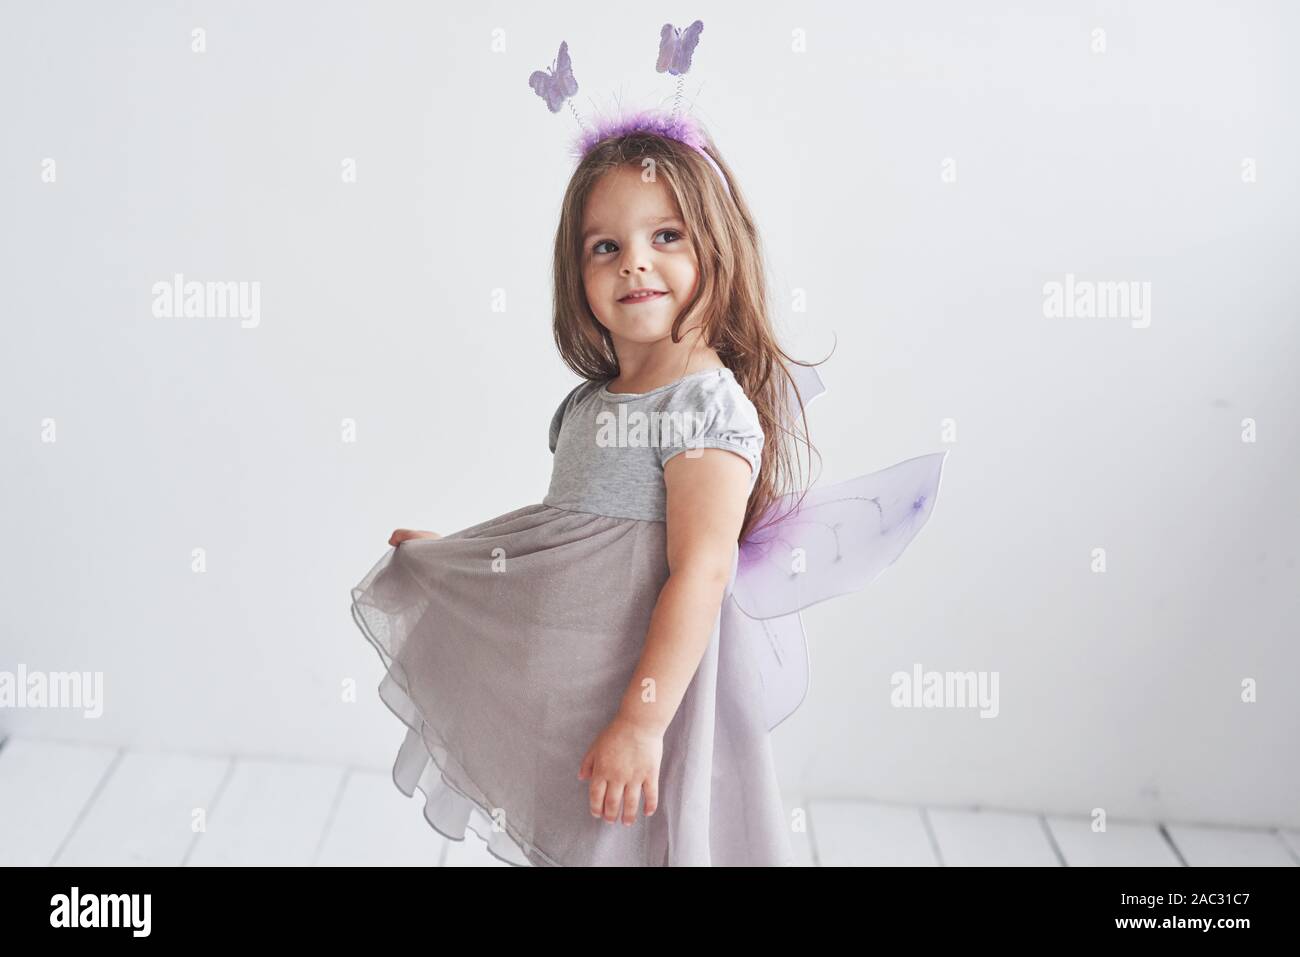 Look sognante. L immaginazione è cosa potente. Adorabile bambina in costume fata in piedi in camera con sfondo bianco Foto Stock